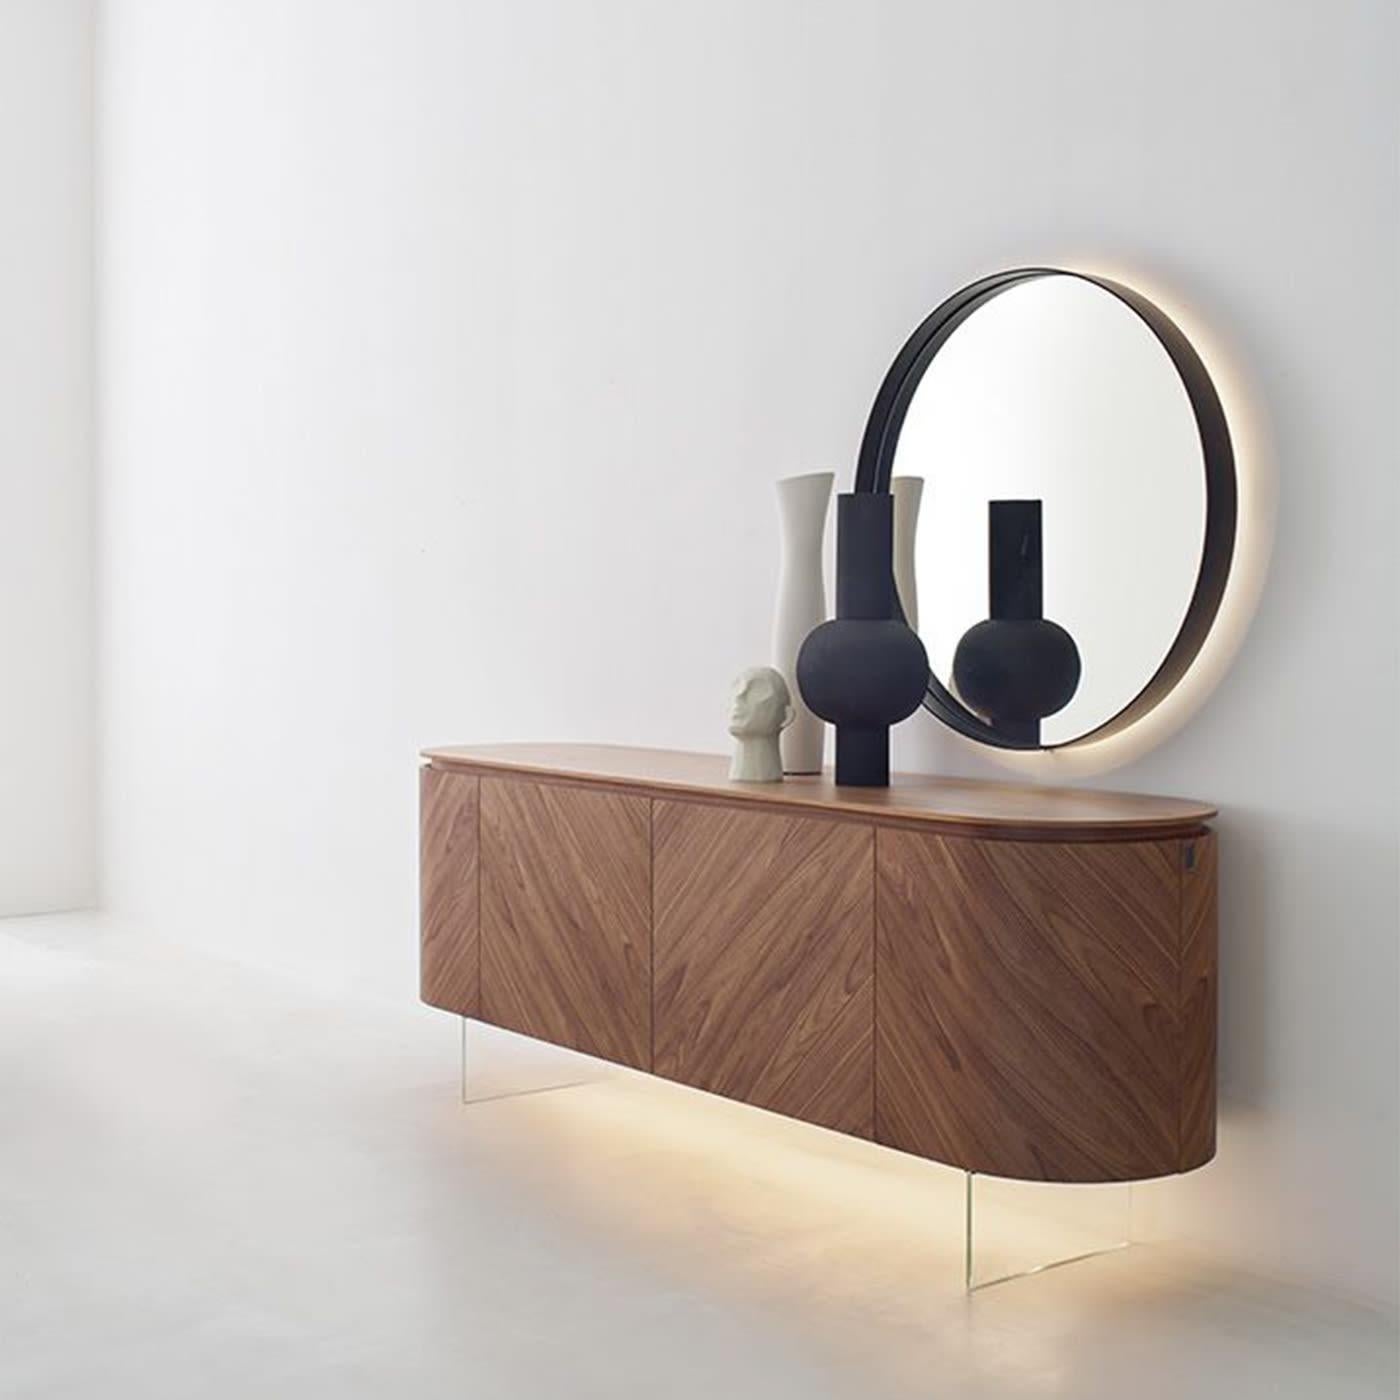 Ein subtiles industrielles Flair durchzieht diesen raffinierten Spiegel, ein hervorragendes Beispiel für minimalistisches Design. Sie ist essentiell in ihrer perfekt runden Form, die die geometrische Perfektion des Kreises zelebriert, und wird von